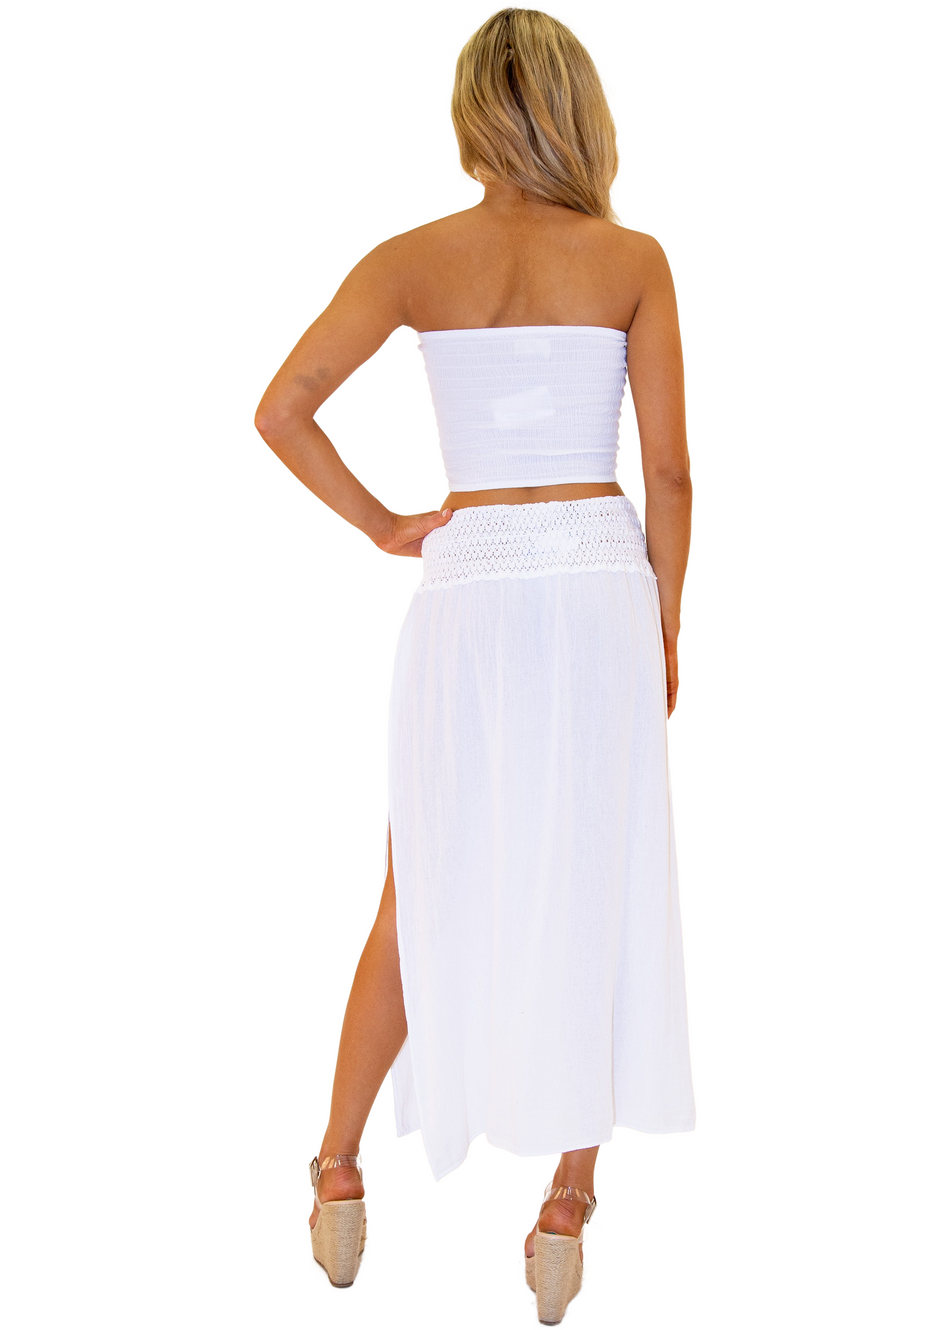 NW1340 - White Cotton Skirt